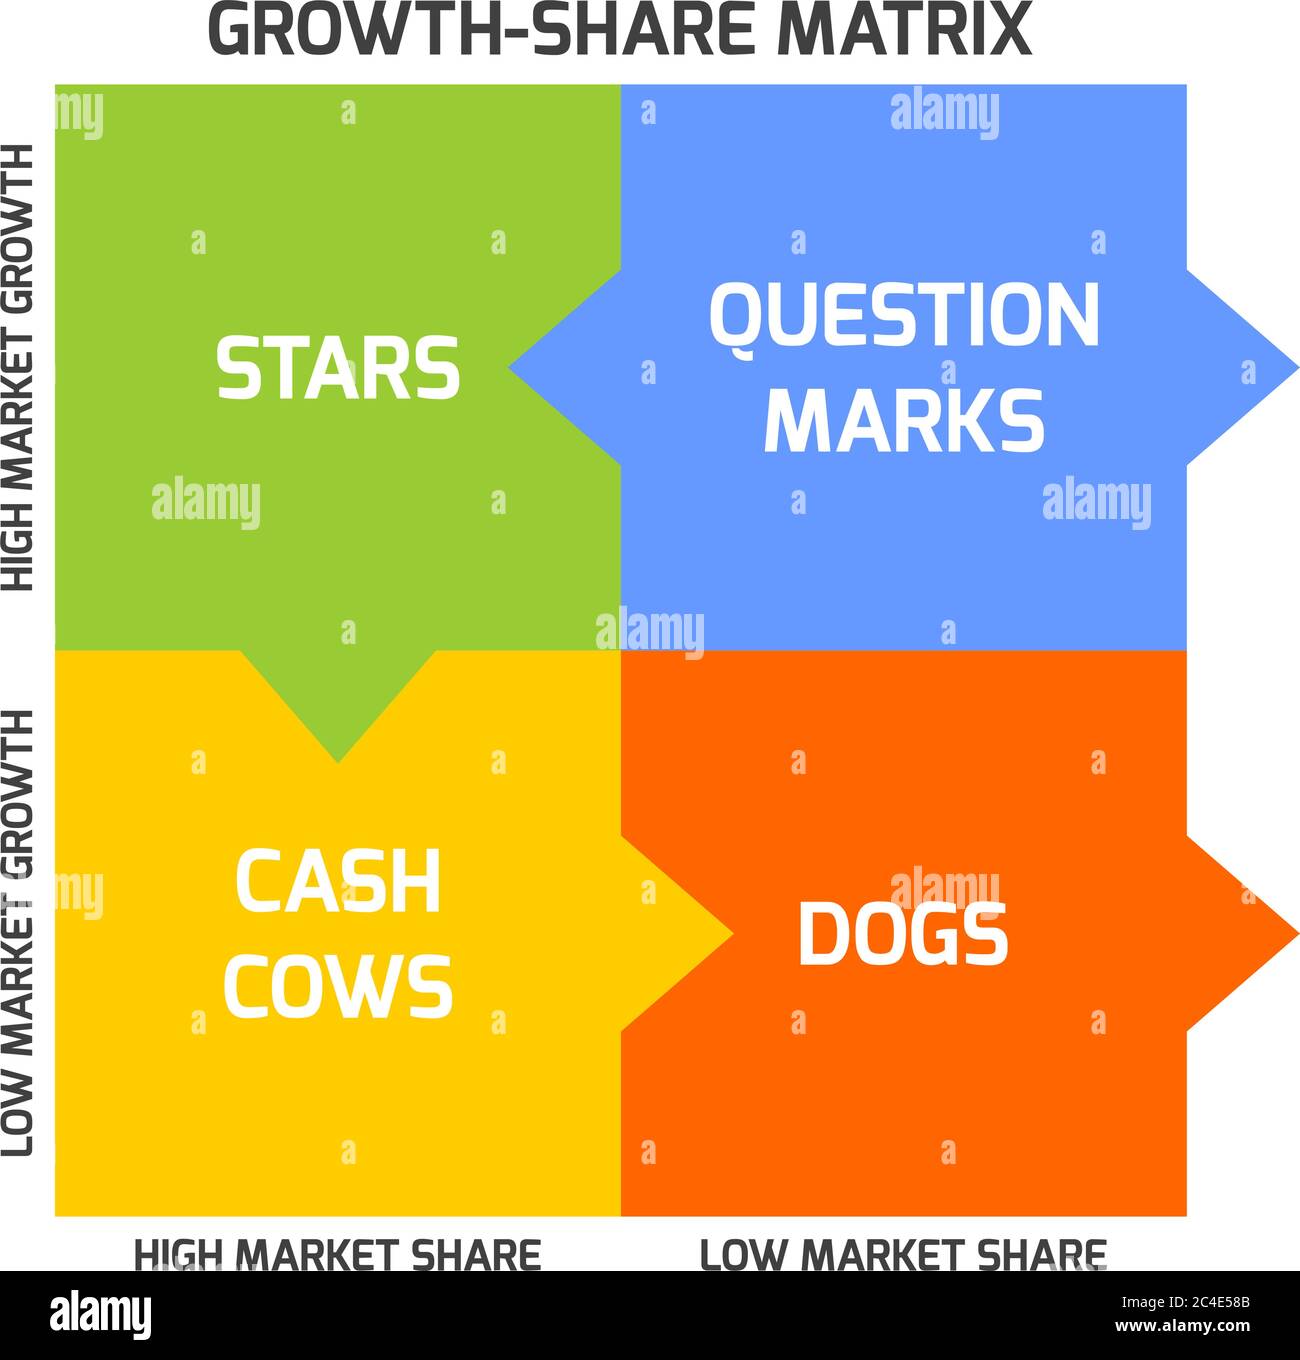 La matrice BCG, ou matrice Boston, vise à identifier les perspectives de croissance élevée en classant les produits en fonction du taux de croissance et de la part de marché. Illustration de Vecteur